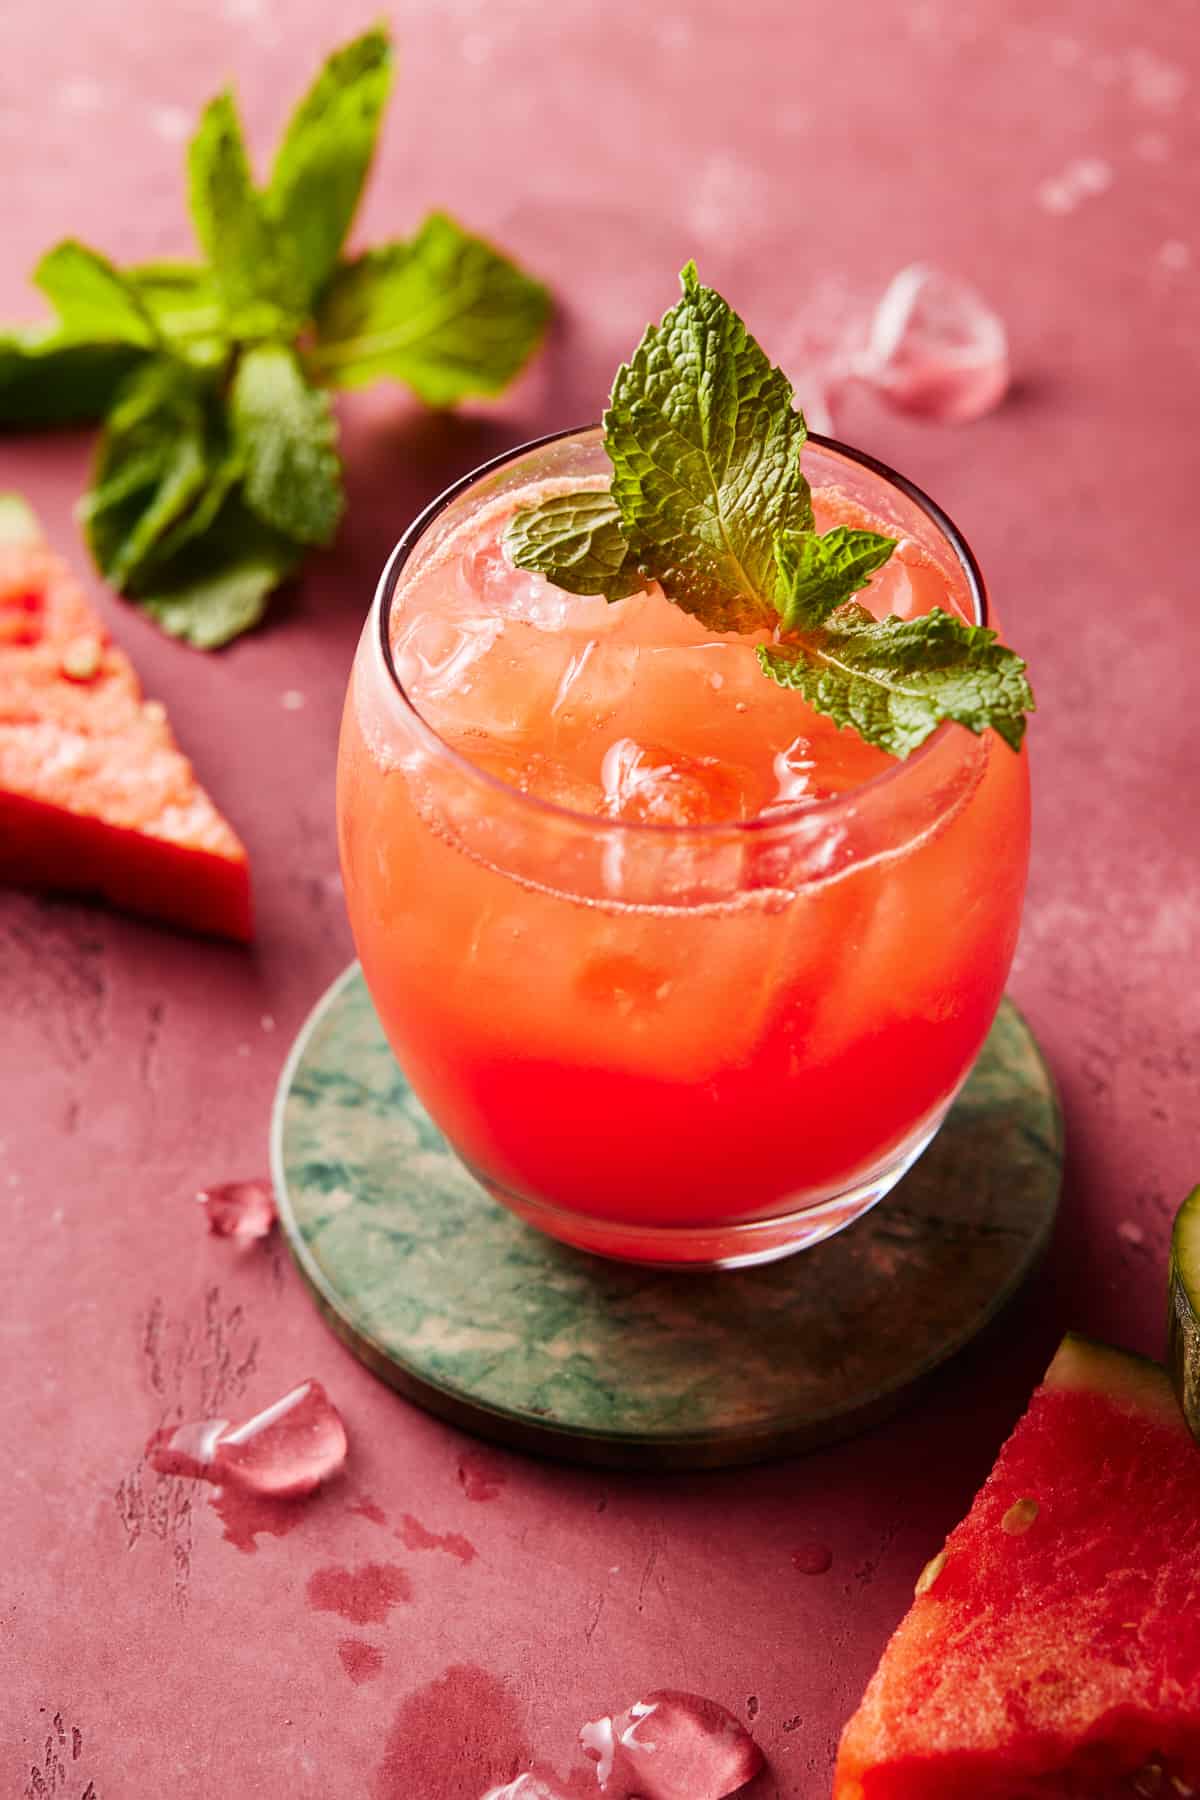 Watermelon Gin Punch - Garnish with Lemon